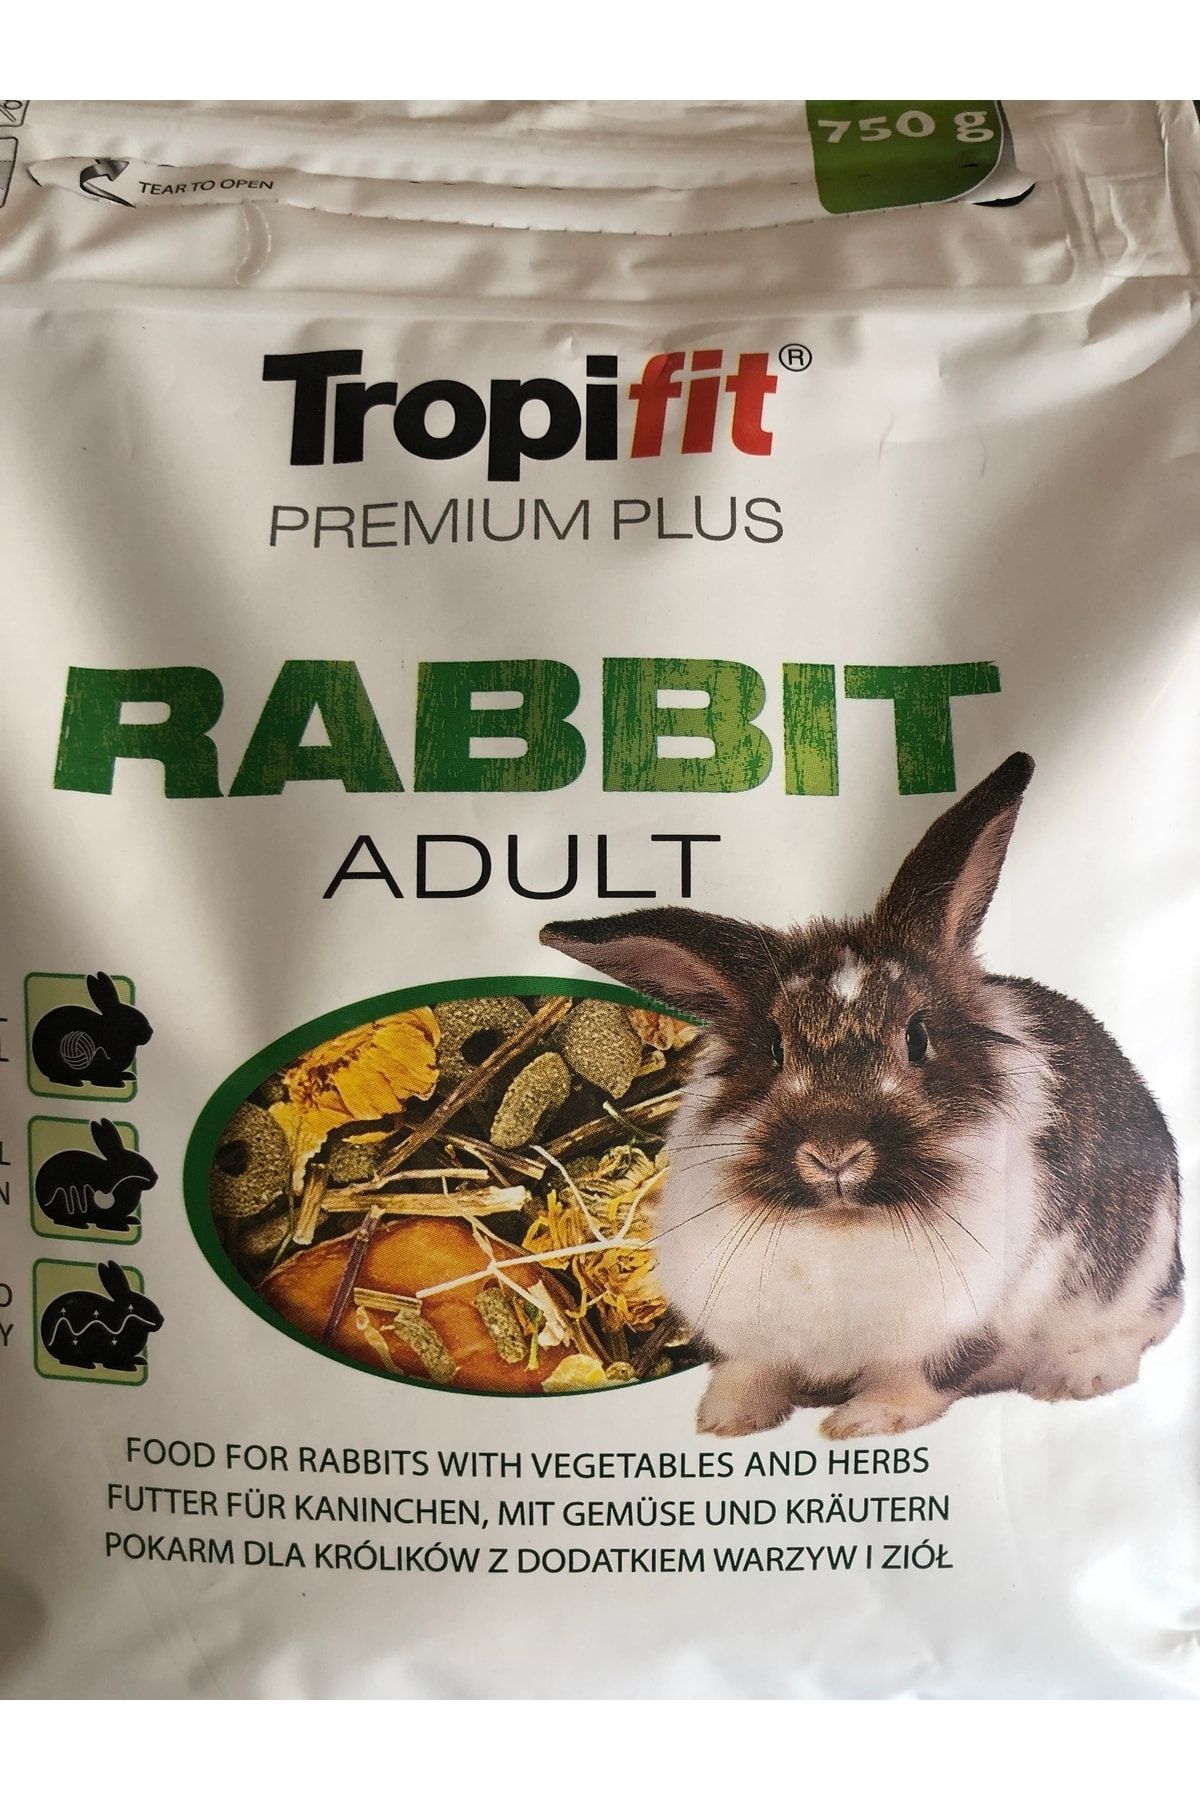 Tropifit Premium Plus Yetişkin Tavşan Yemi 750 gr